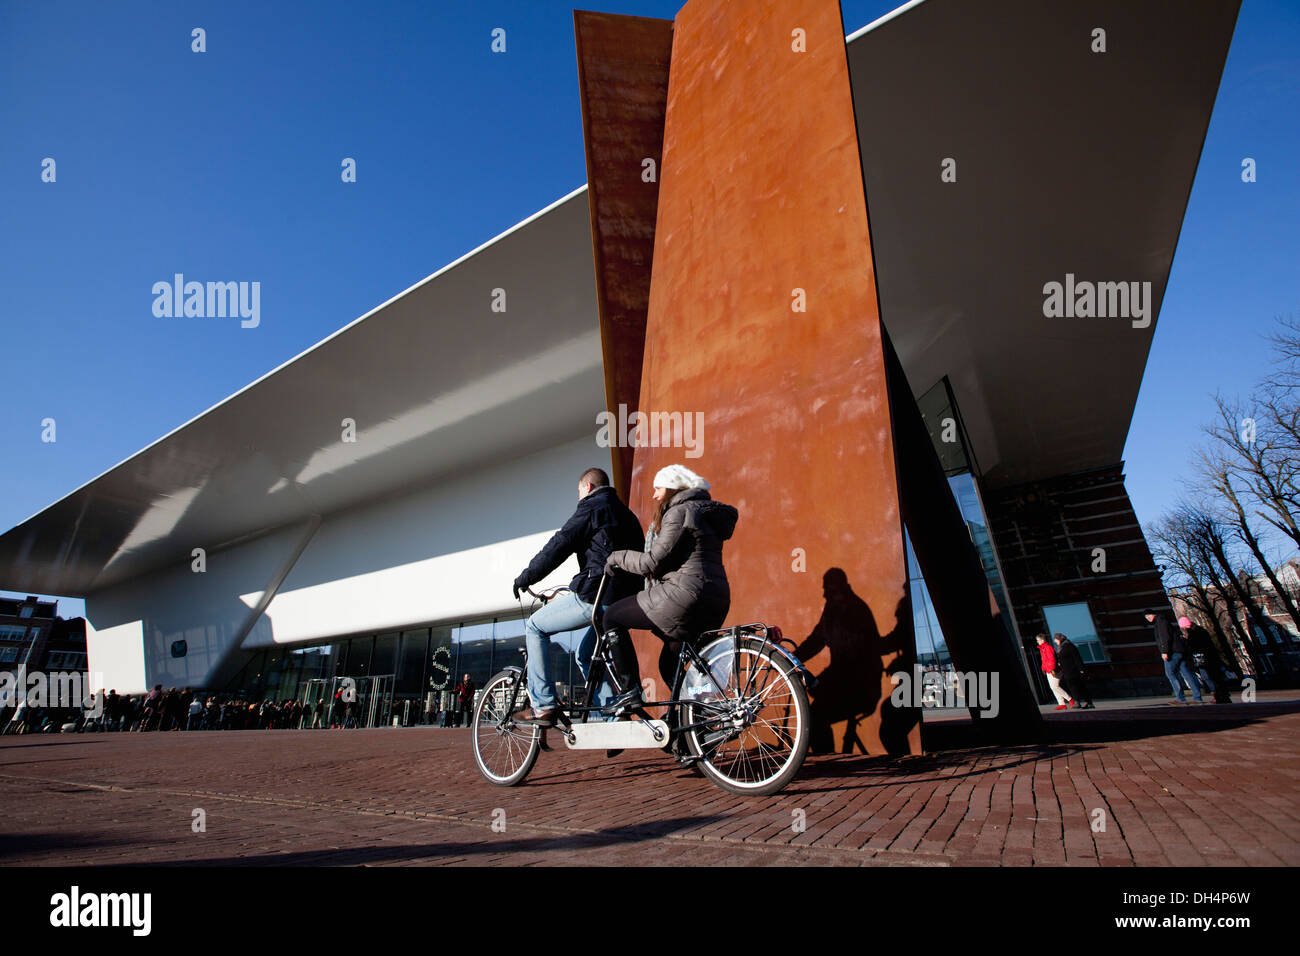 Niederlande, Amsterdam, New Anhang des Stedelijk Museum im Volksmund als die Badewanne. Paar auf Tandem-Fahrrad Stockfoto